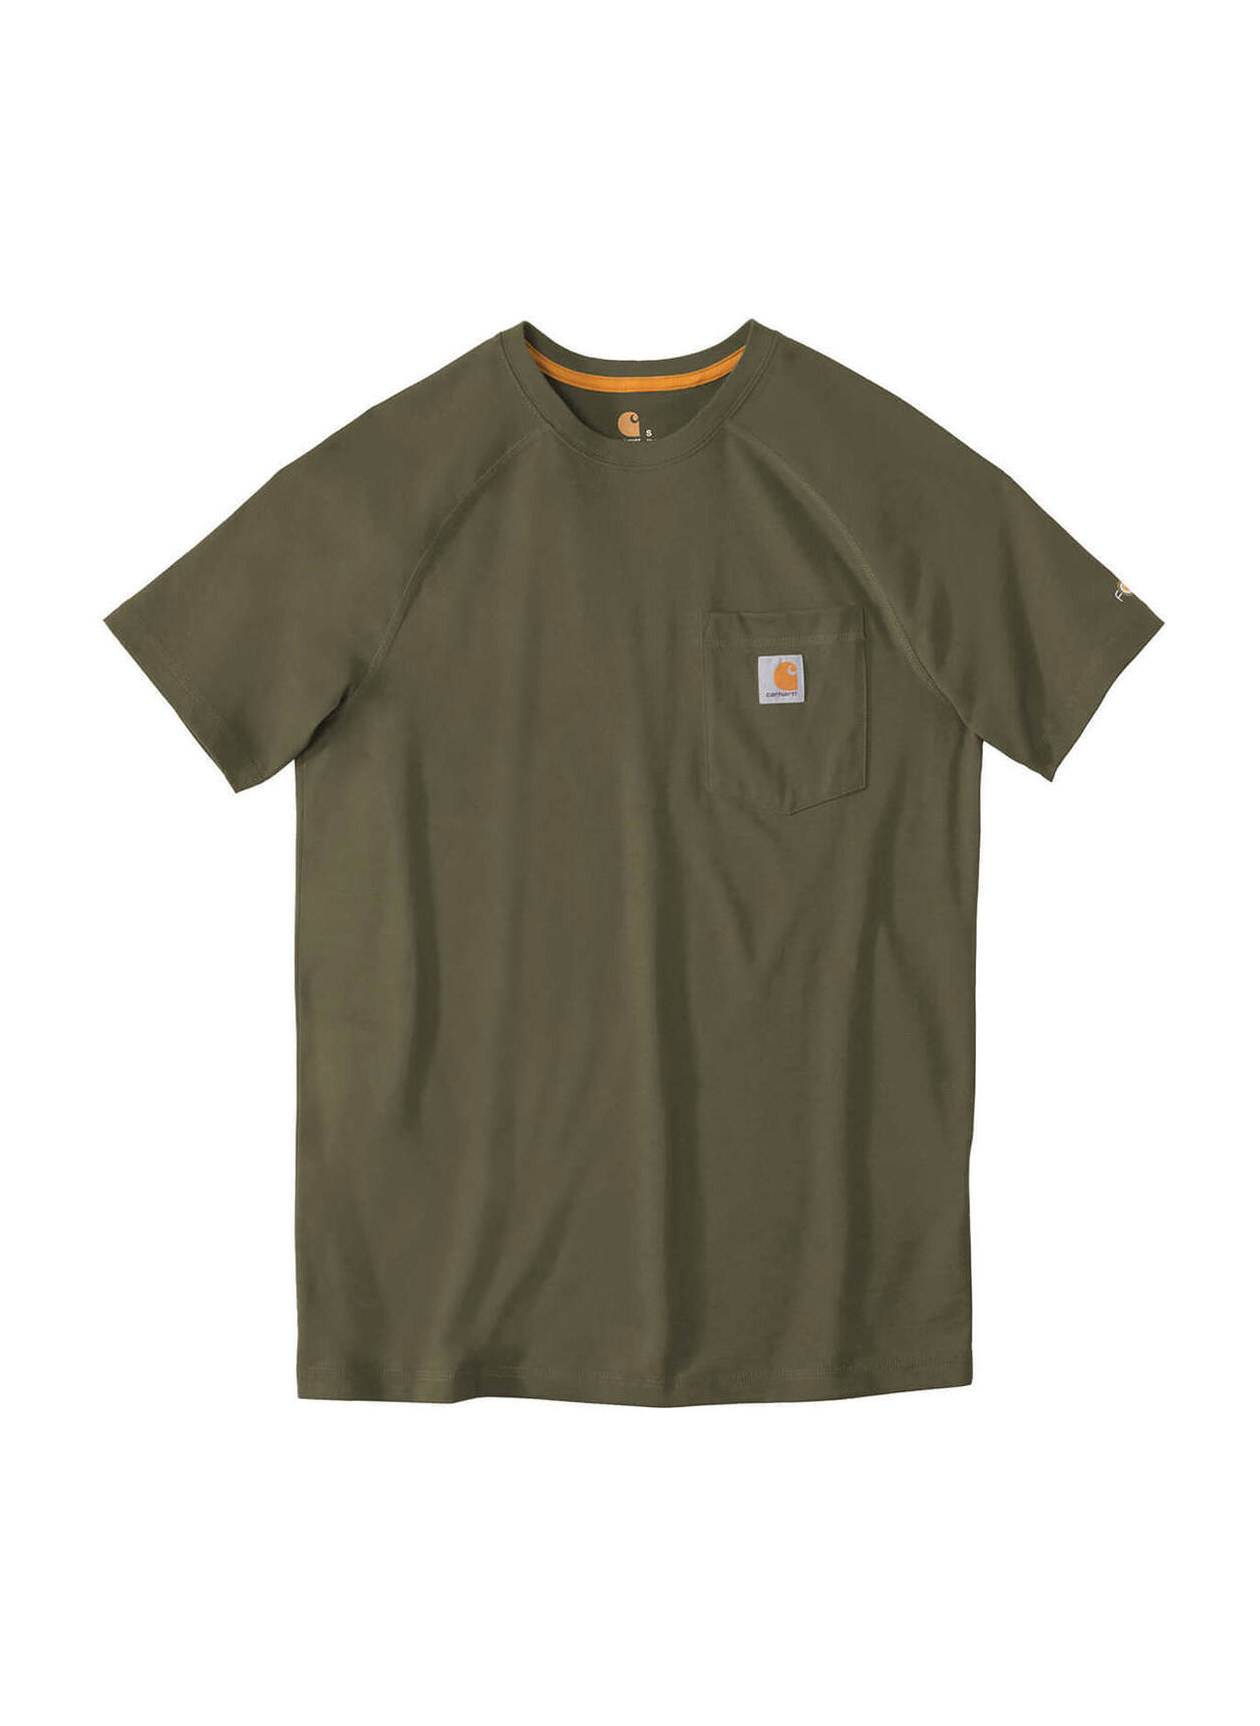 Carhartt Men's Moss Force Cotton Delmont T-Shirt